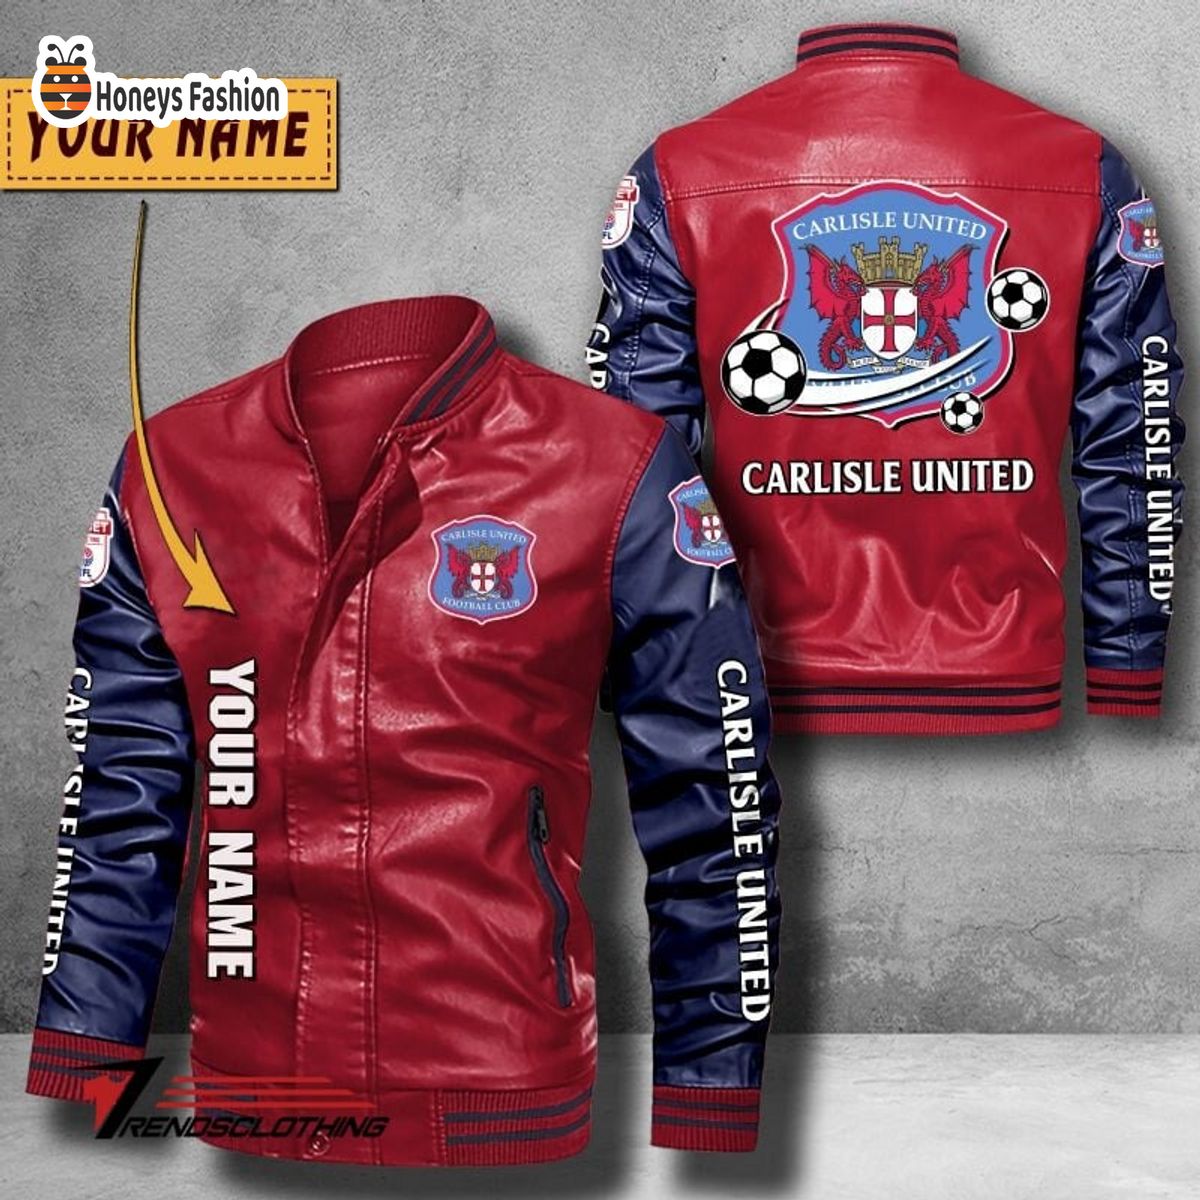 Carlisle United Custom Name Leather Bomber Jacket